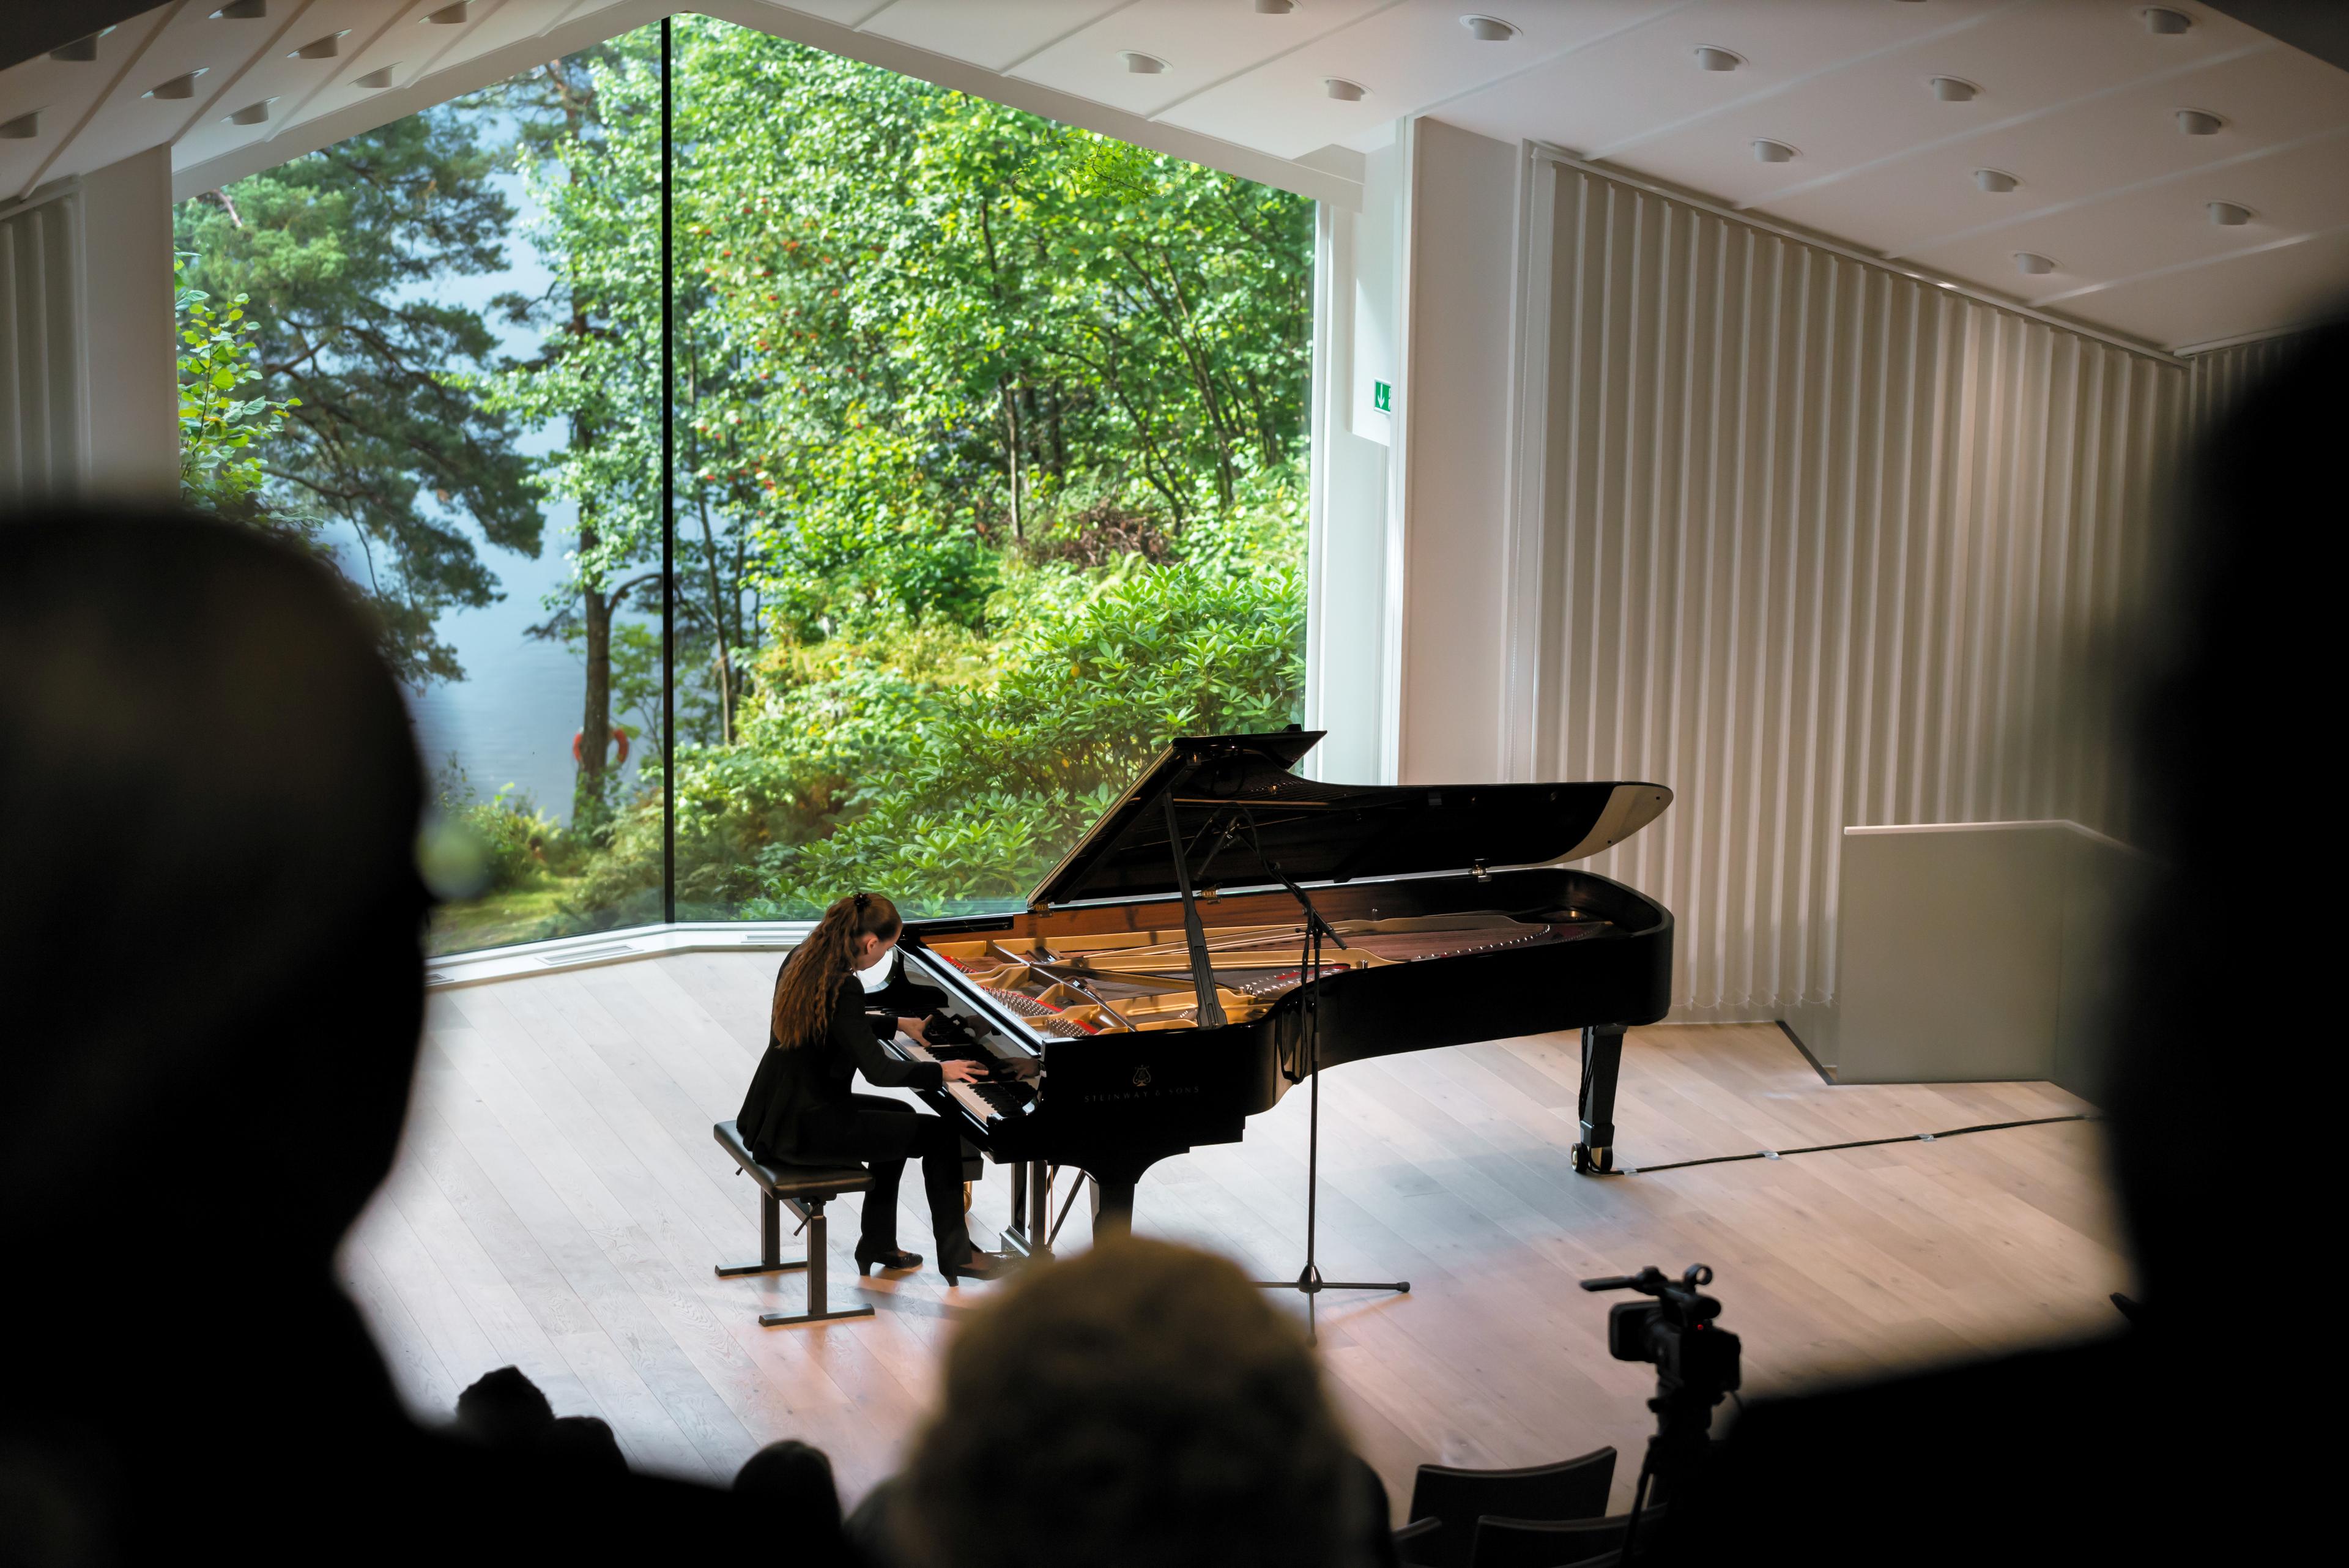 Fra konsertsalen på Troldhaugen, hvor vi ser en pianist ved flygelet og publikum i forgrunnen